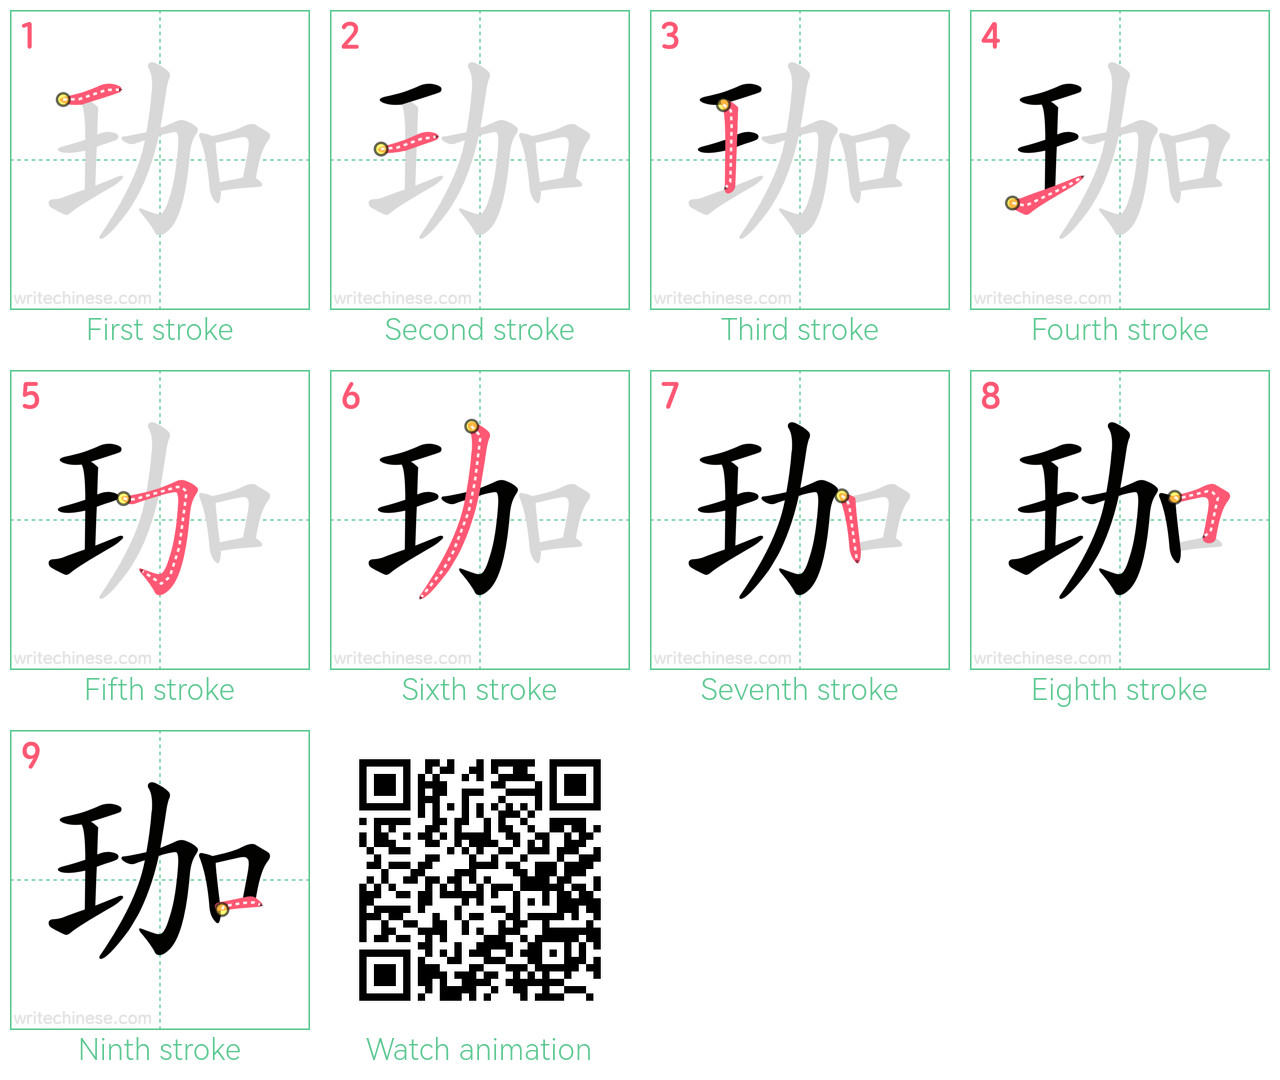 珈 step-by-step stroke order diagrams